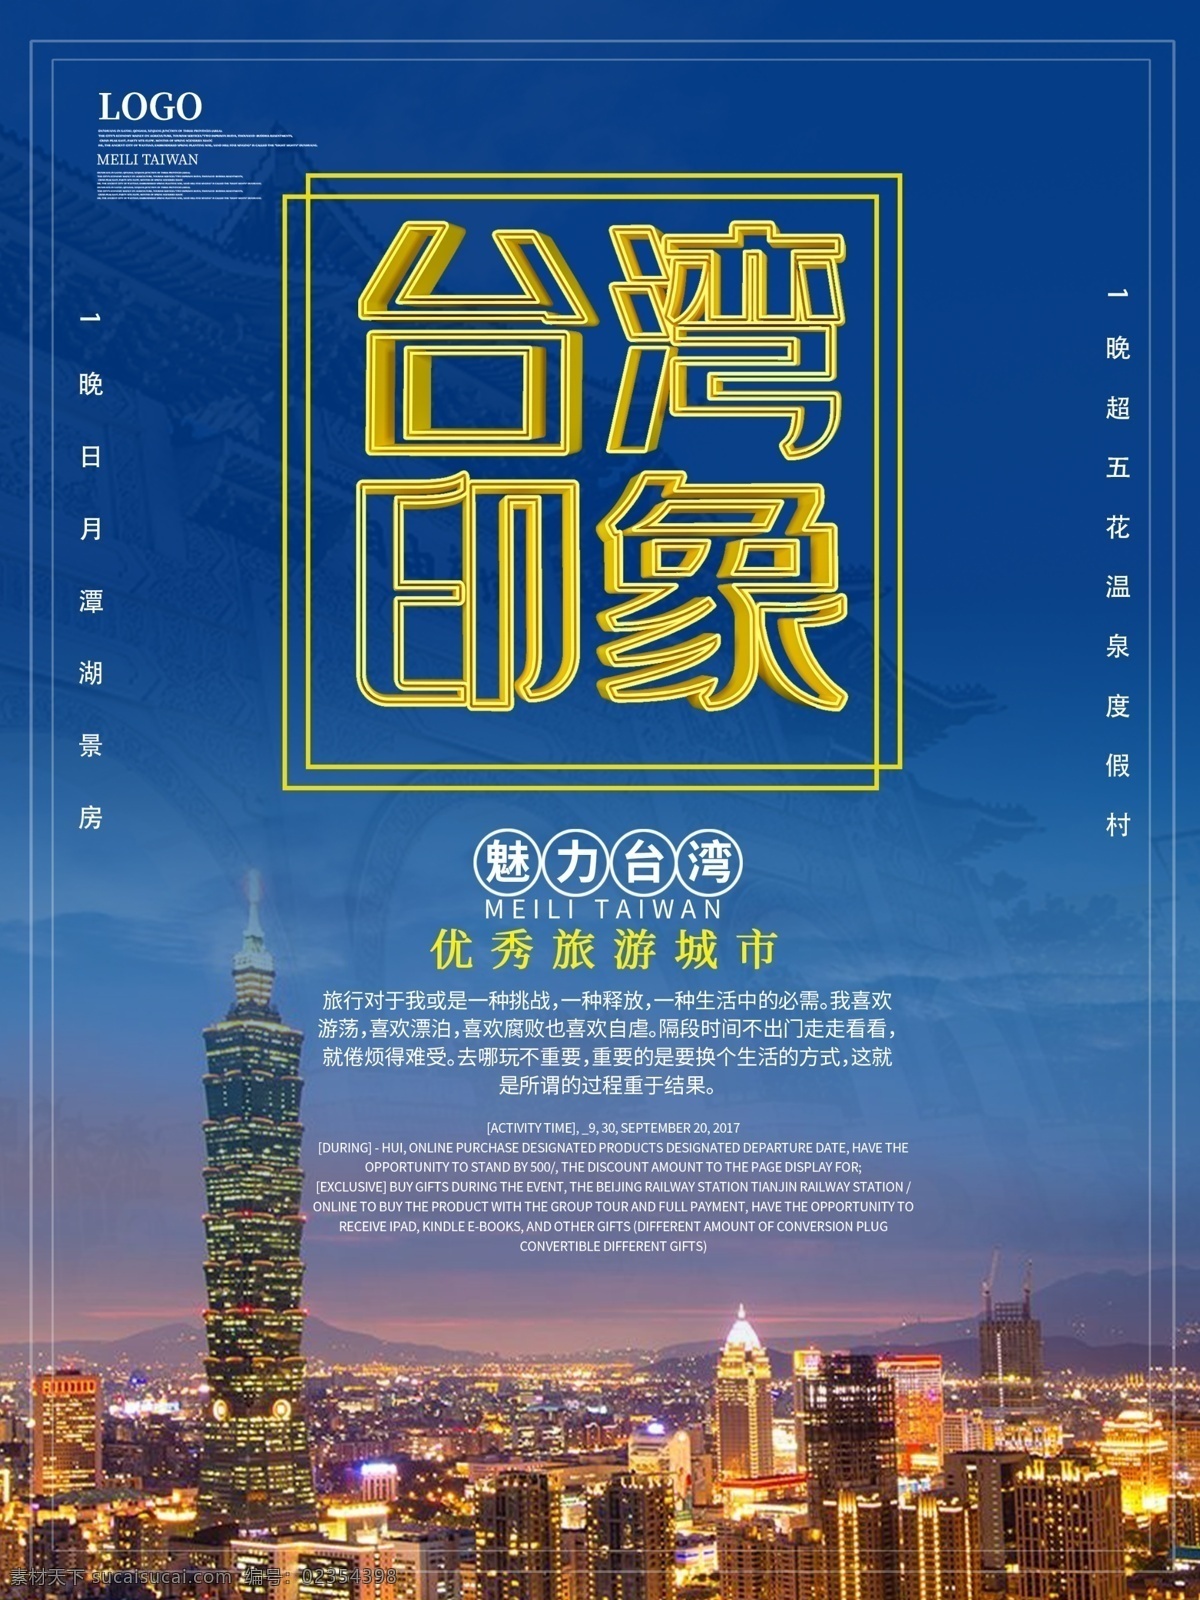 台湾 旅游 宣传海报 台湾印象 姨娘台湾 台湾旅游 魅力台湾